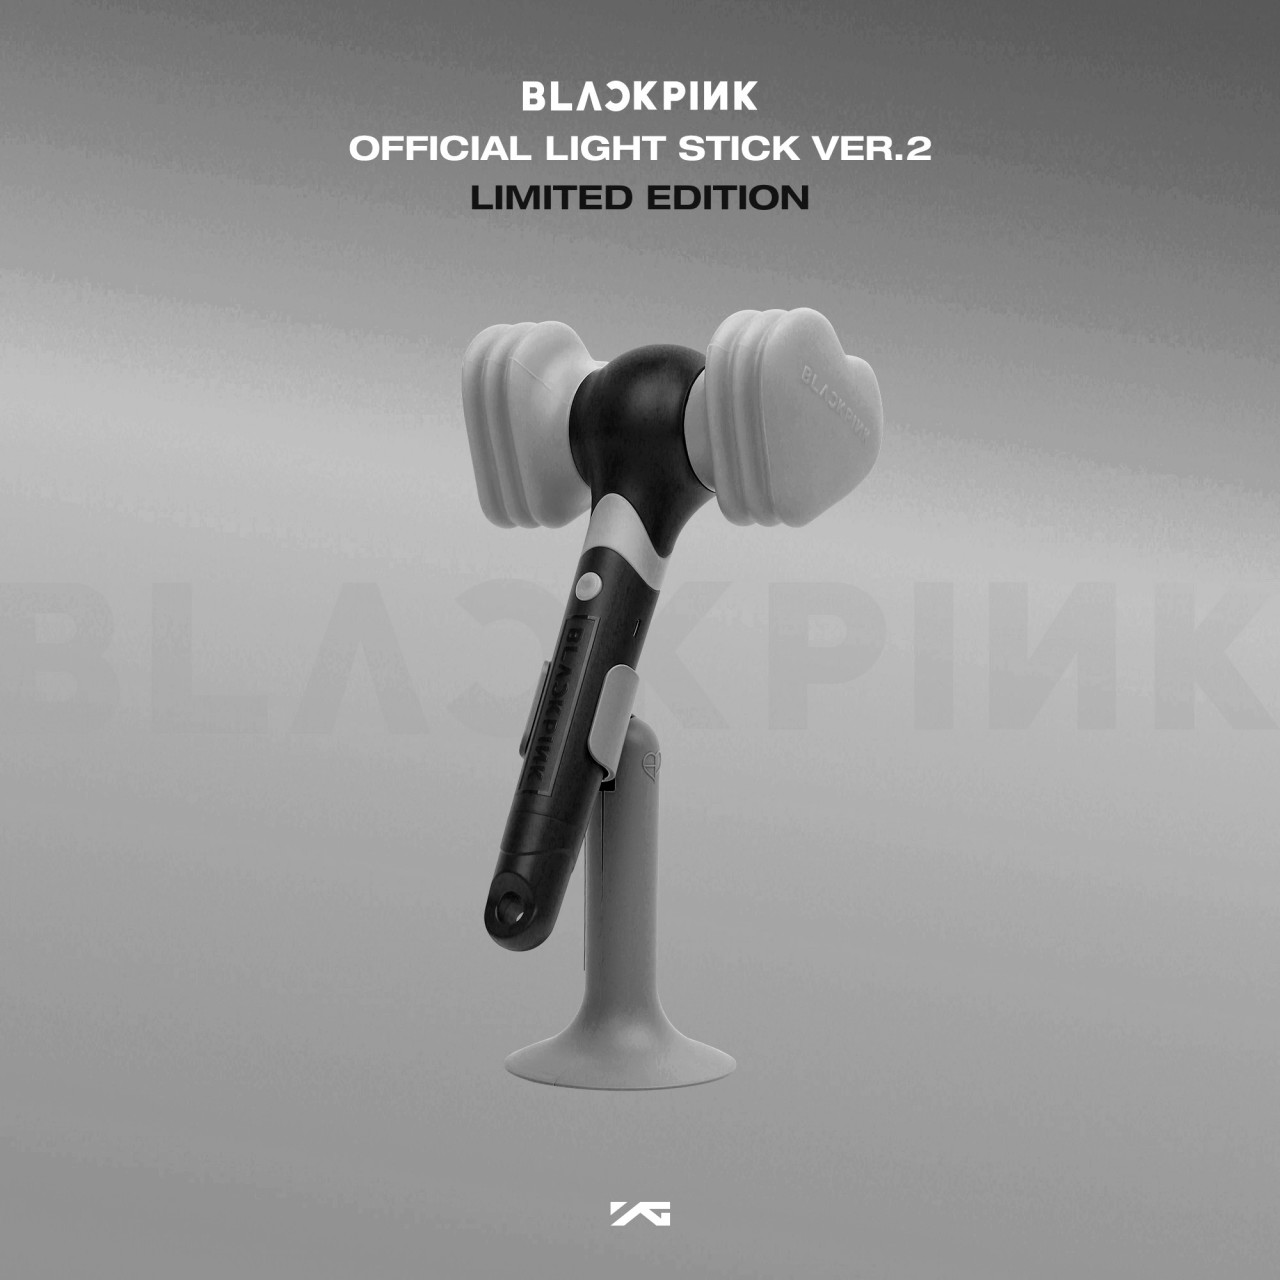 16 Blackpink Lightstick ideas  blackpink, kpop merch, yg entertainment